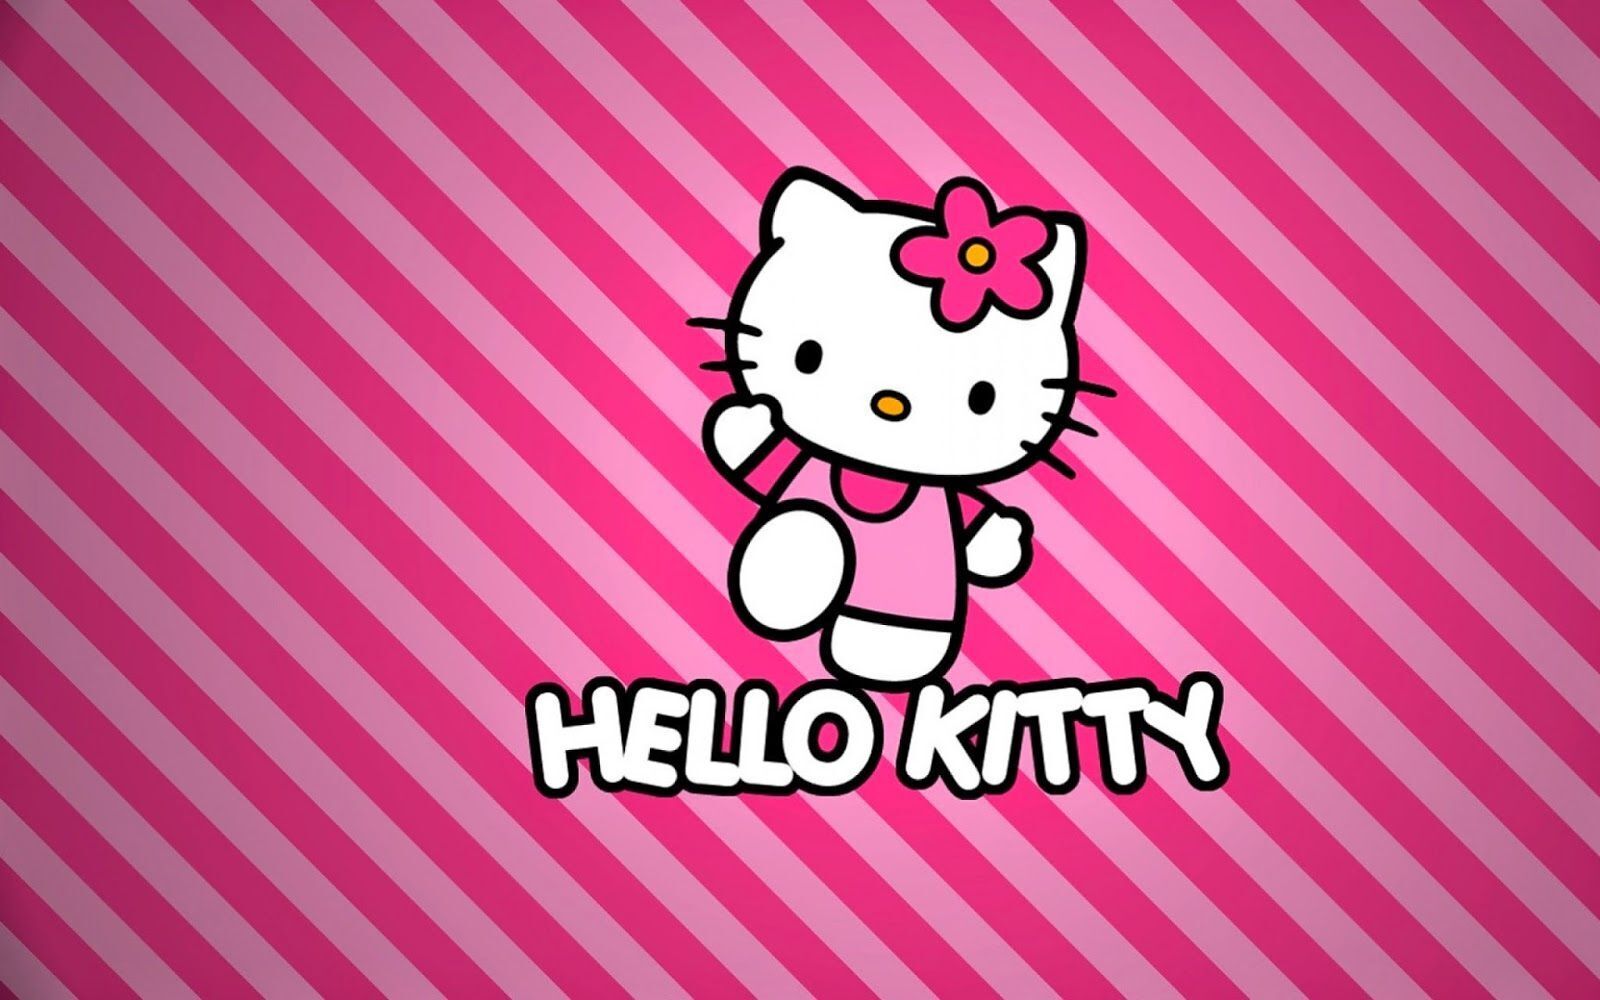 hinh nen hello kitty 001